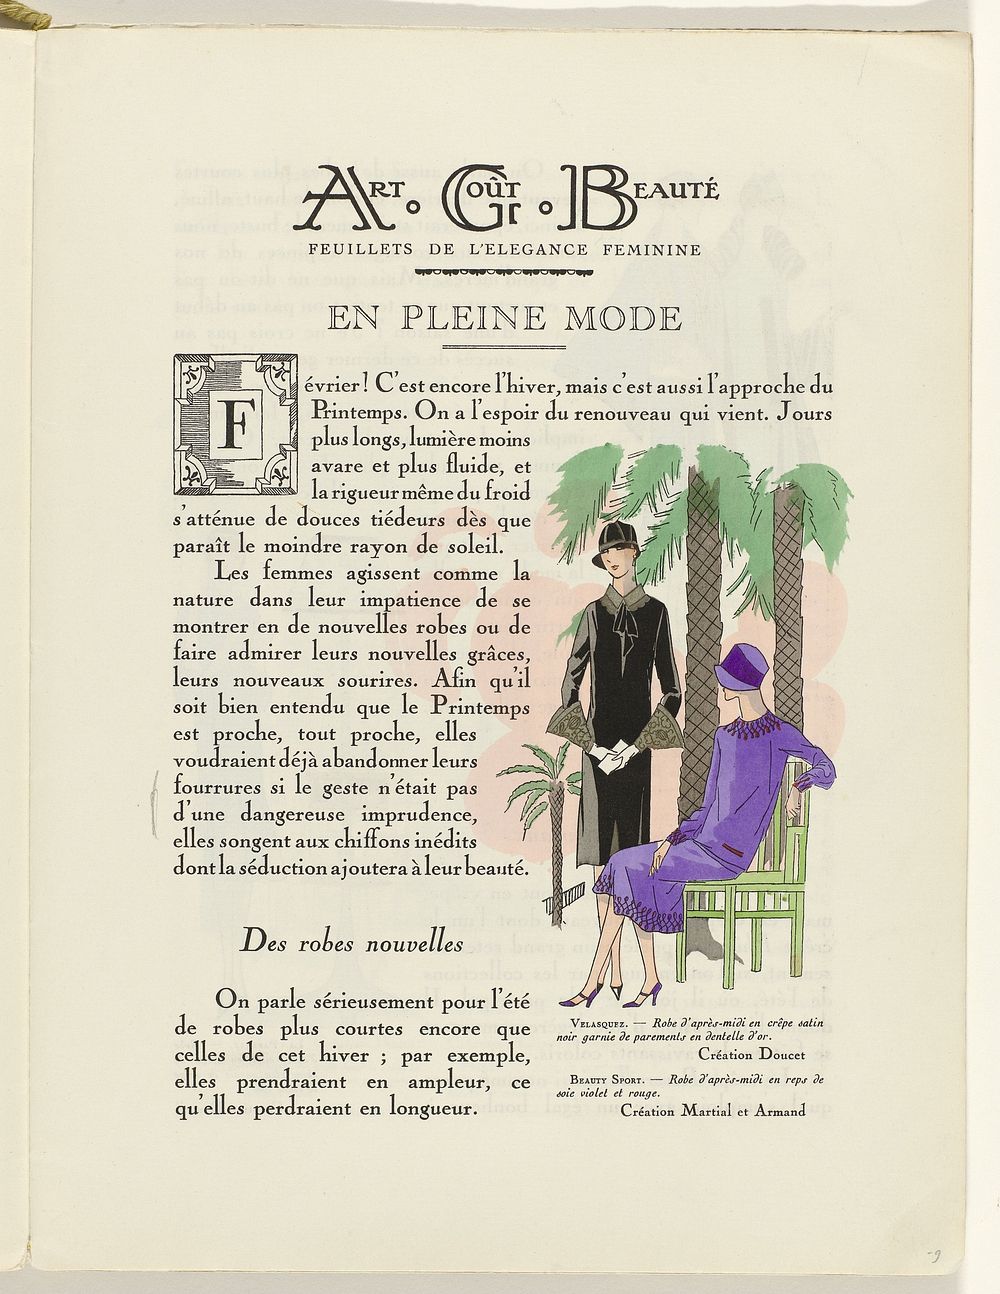 Art - Goût - Beauté, Feuillets de l' élégance féminine, Février 1926, No. 66, 6e Année, p. 9 (1926) by Charles Goy, Jacques…